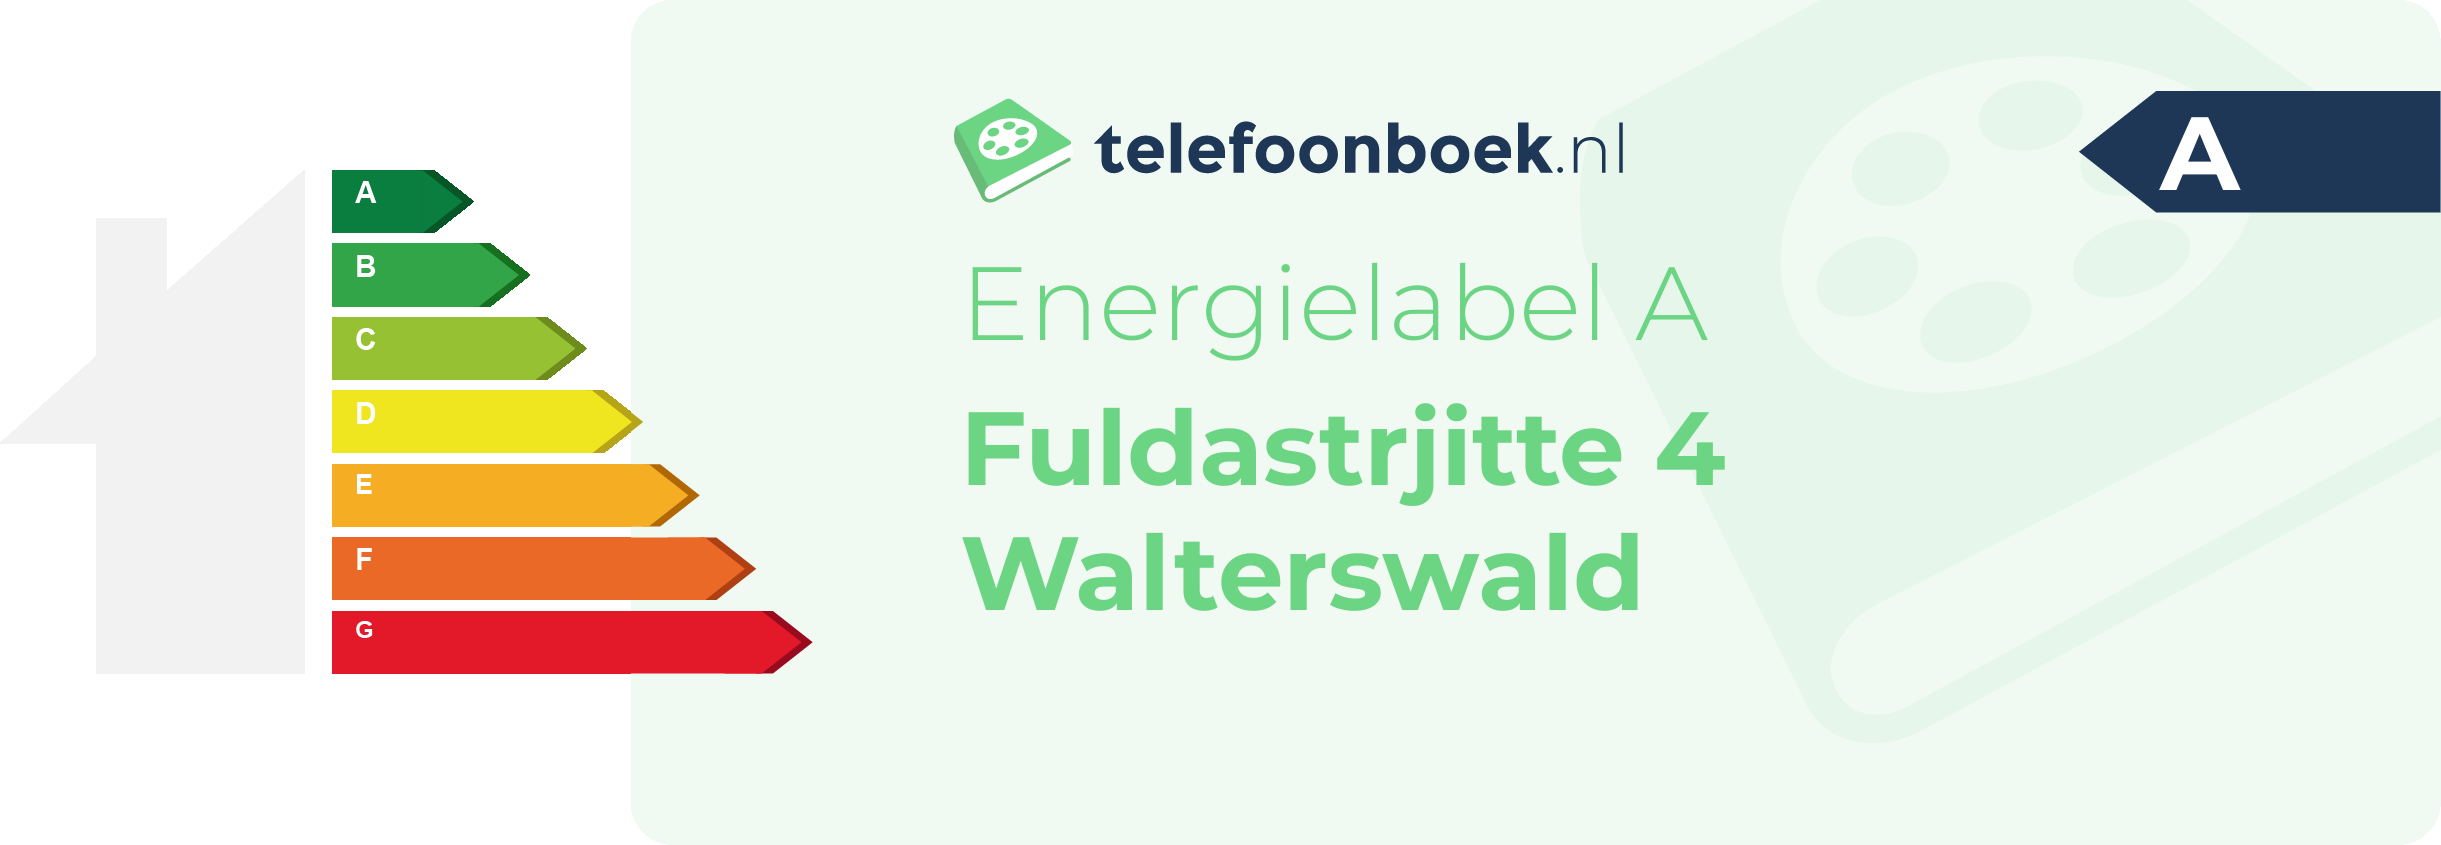 Energielabel Fuldastrjitte 4 Walterswald